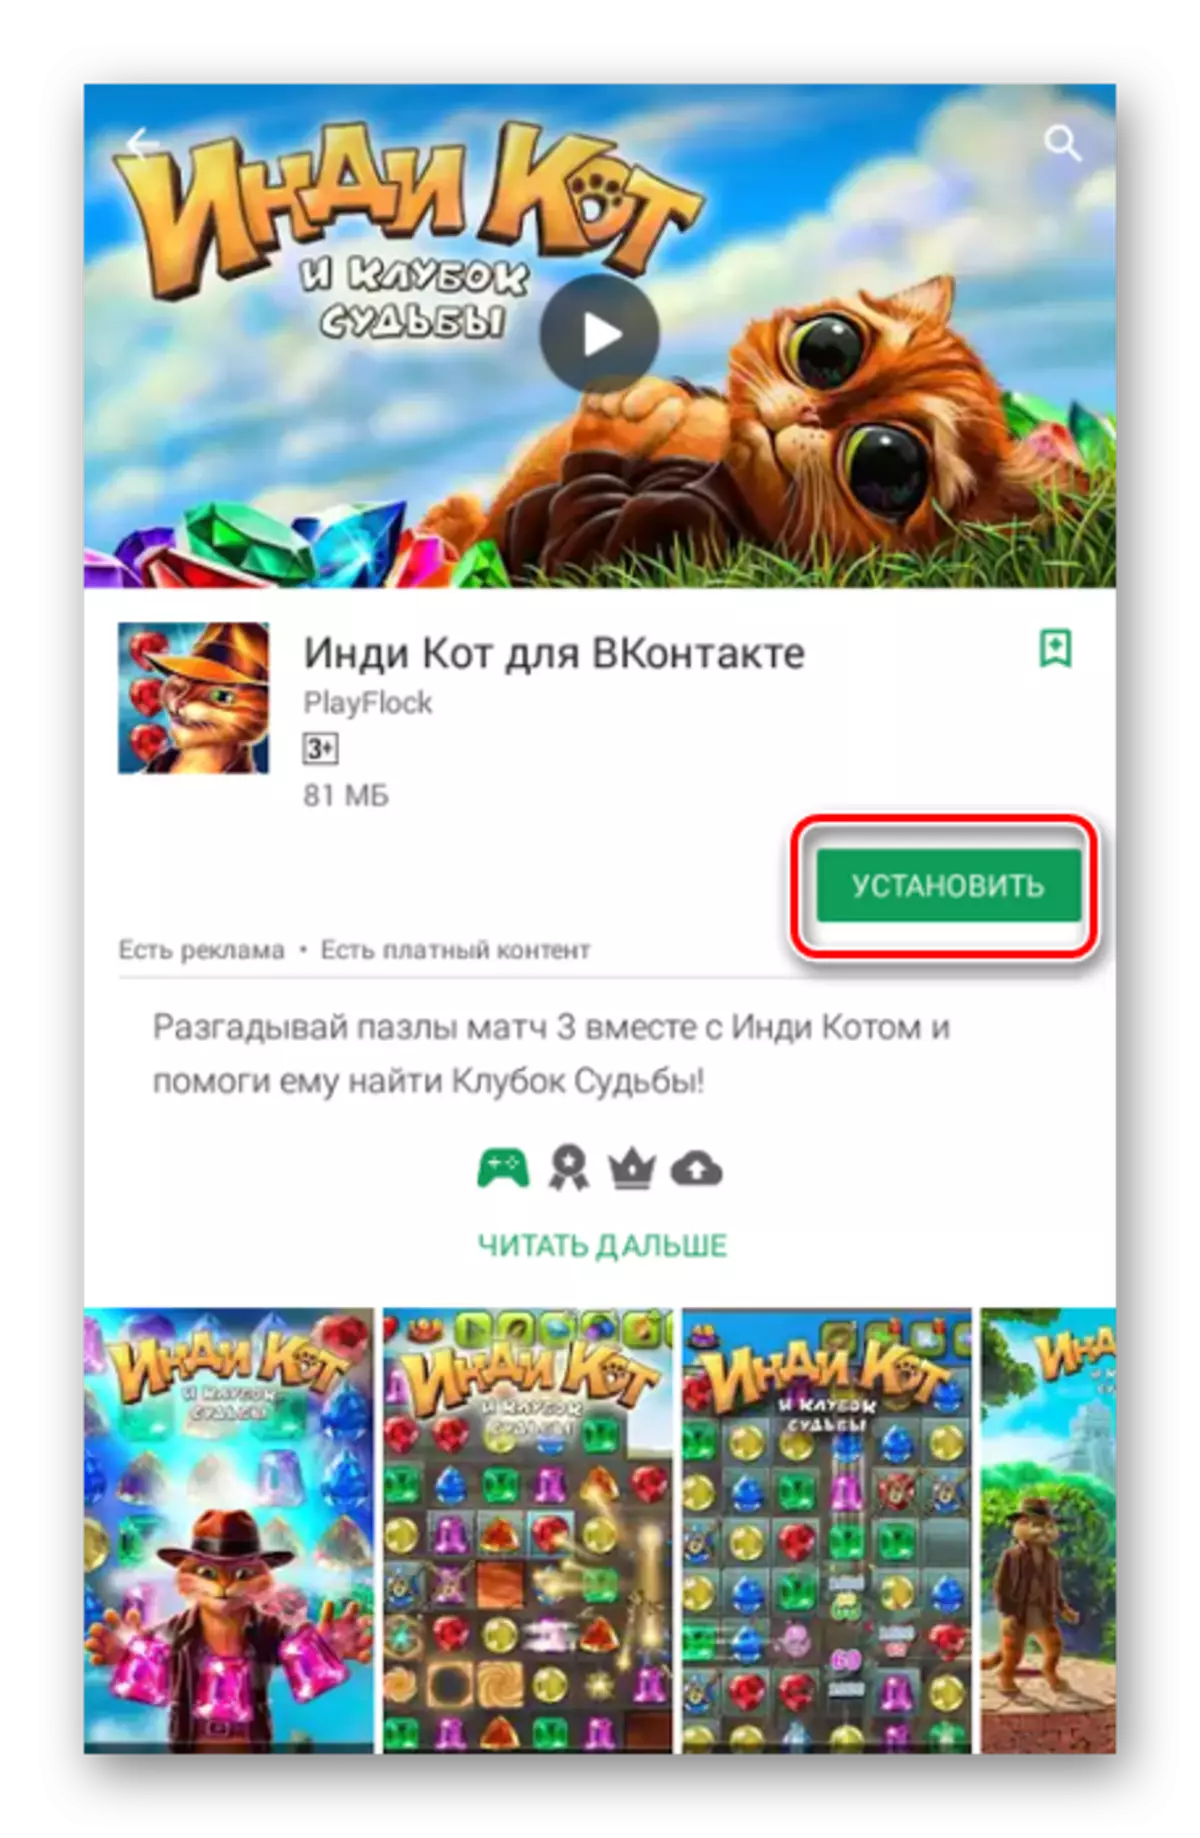 Εγκατάσταση του παιχνιδιού από το Vkontakte στο Android